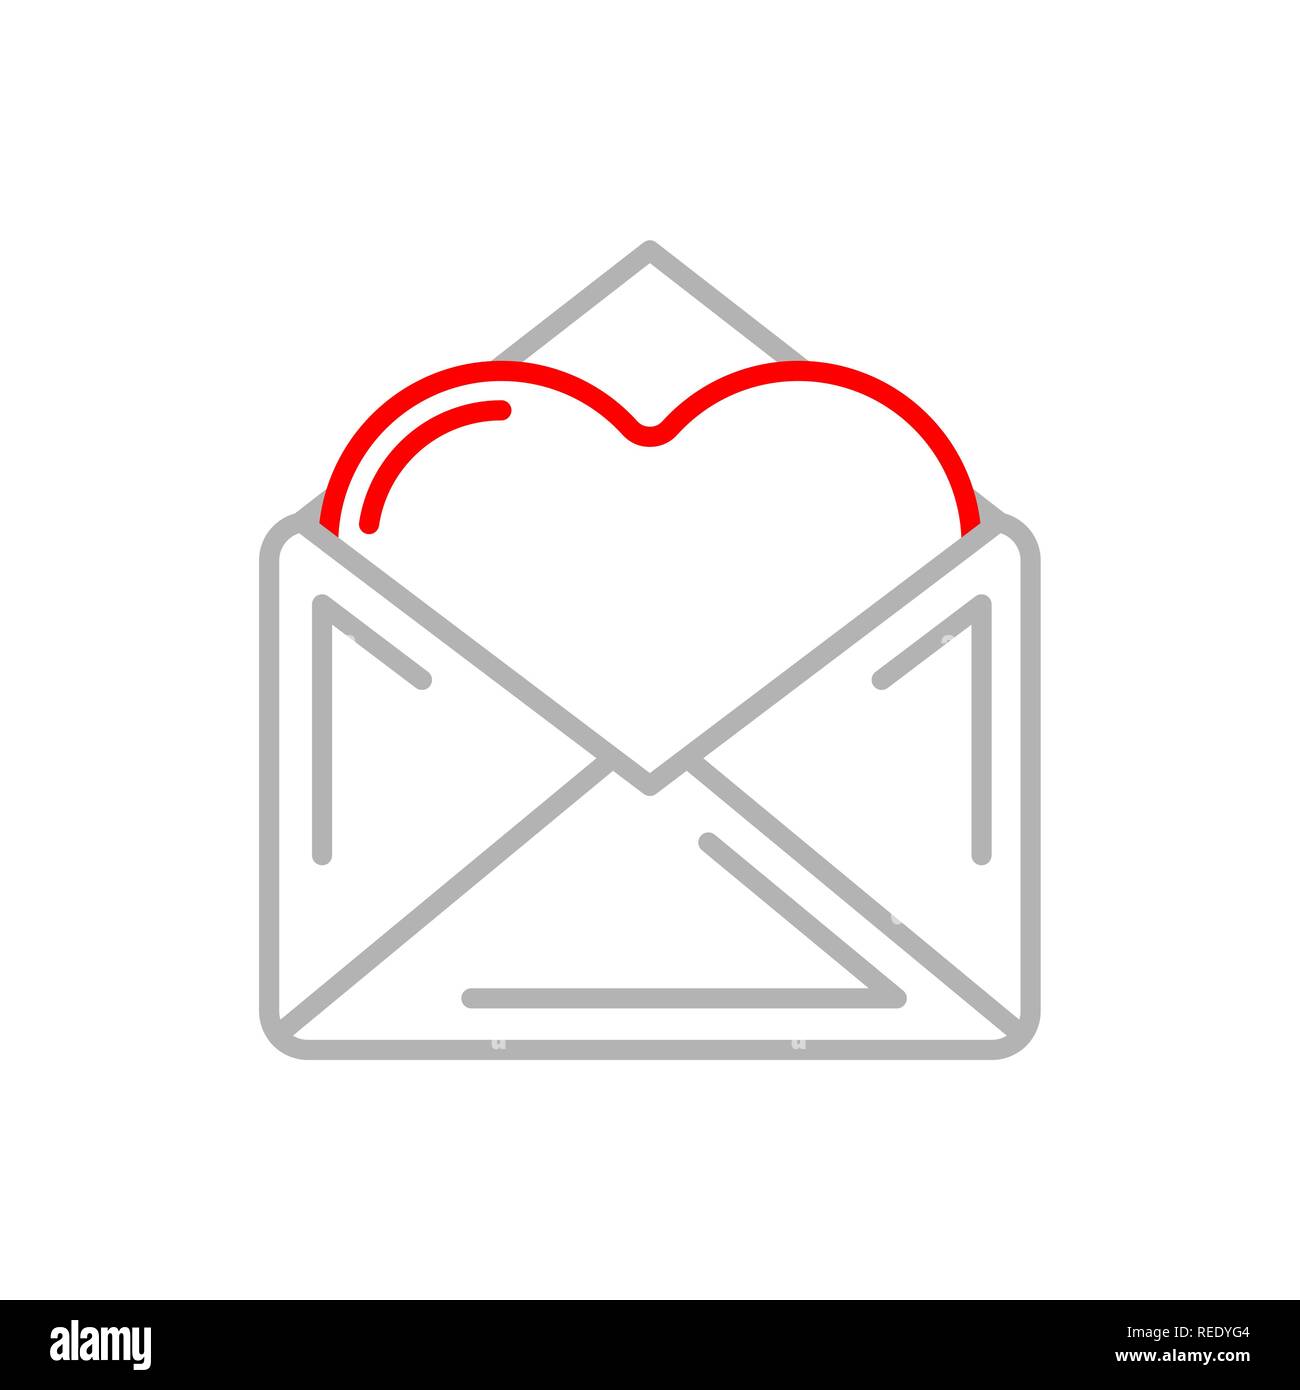 Lovemail. Почта с сердечком. Значок письма с сообщением сердечко. Красный ящик для почты с сердечком. Конверт с сердечком клипарт.